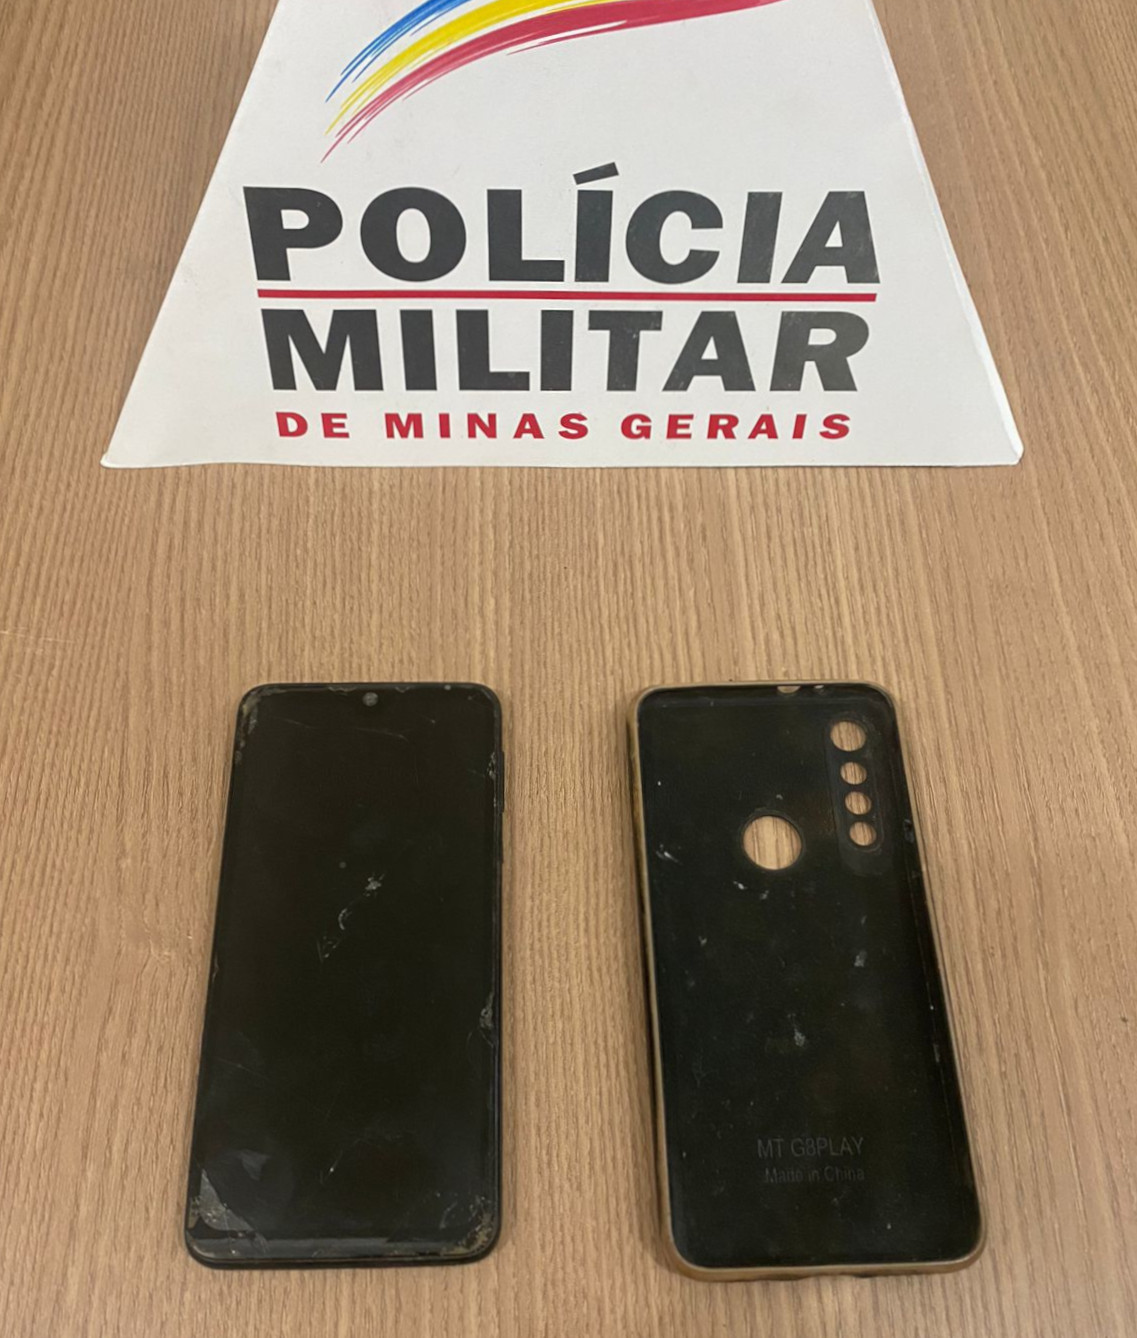 Celular recuperado pela Polícia Militar, na quarta-feira, 17-05-23, no bairro Padre Faria, em Ouro Preto (MG)
Crédito: 52º BPM/PMMG
